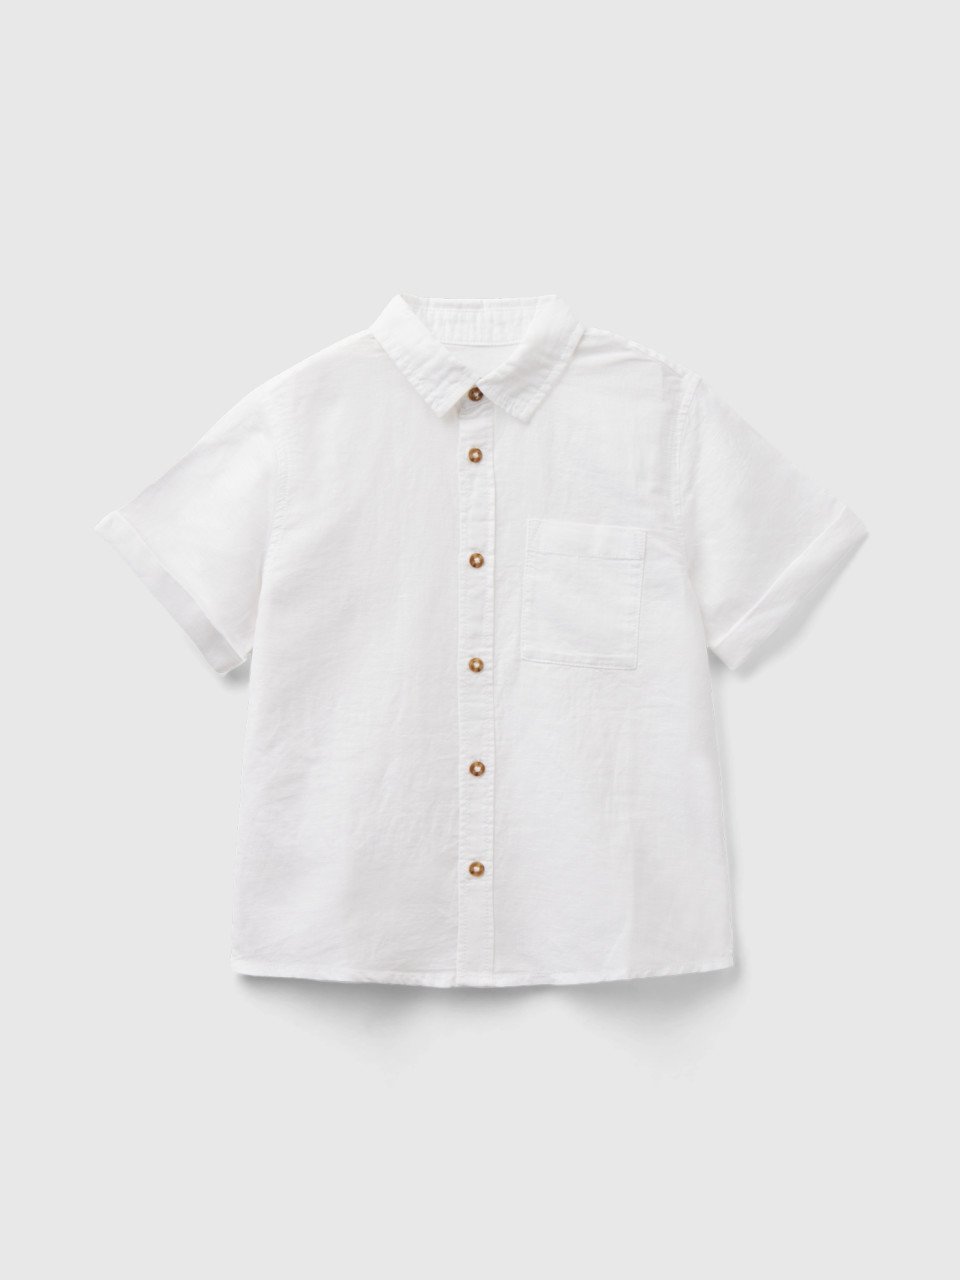 Benetton, Short Sleeve Shirt In Linen Blend, White, Kids